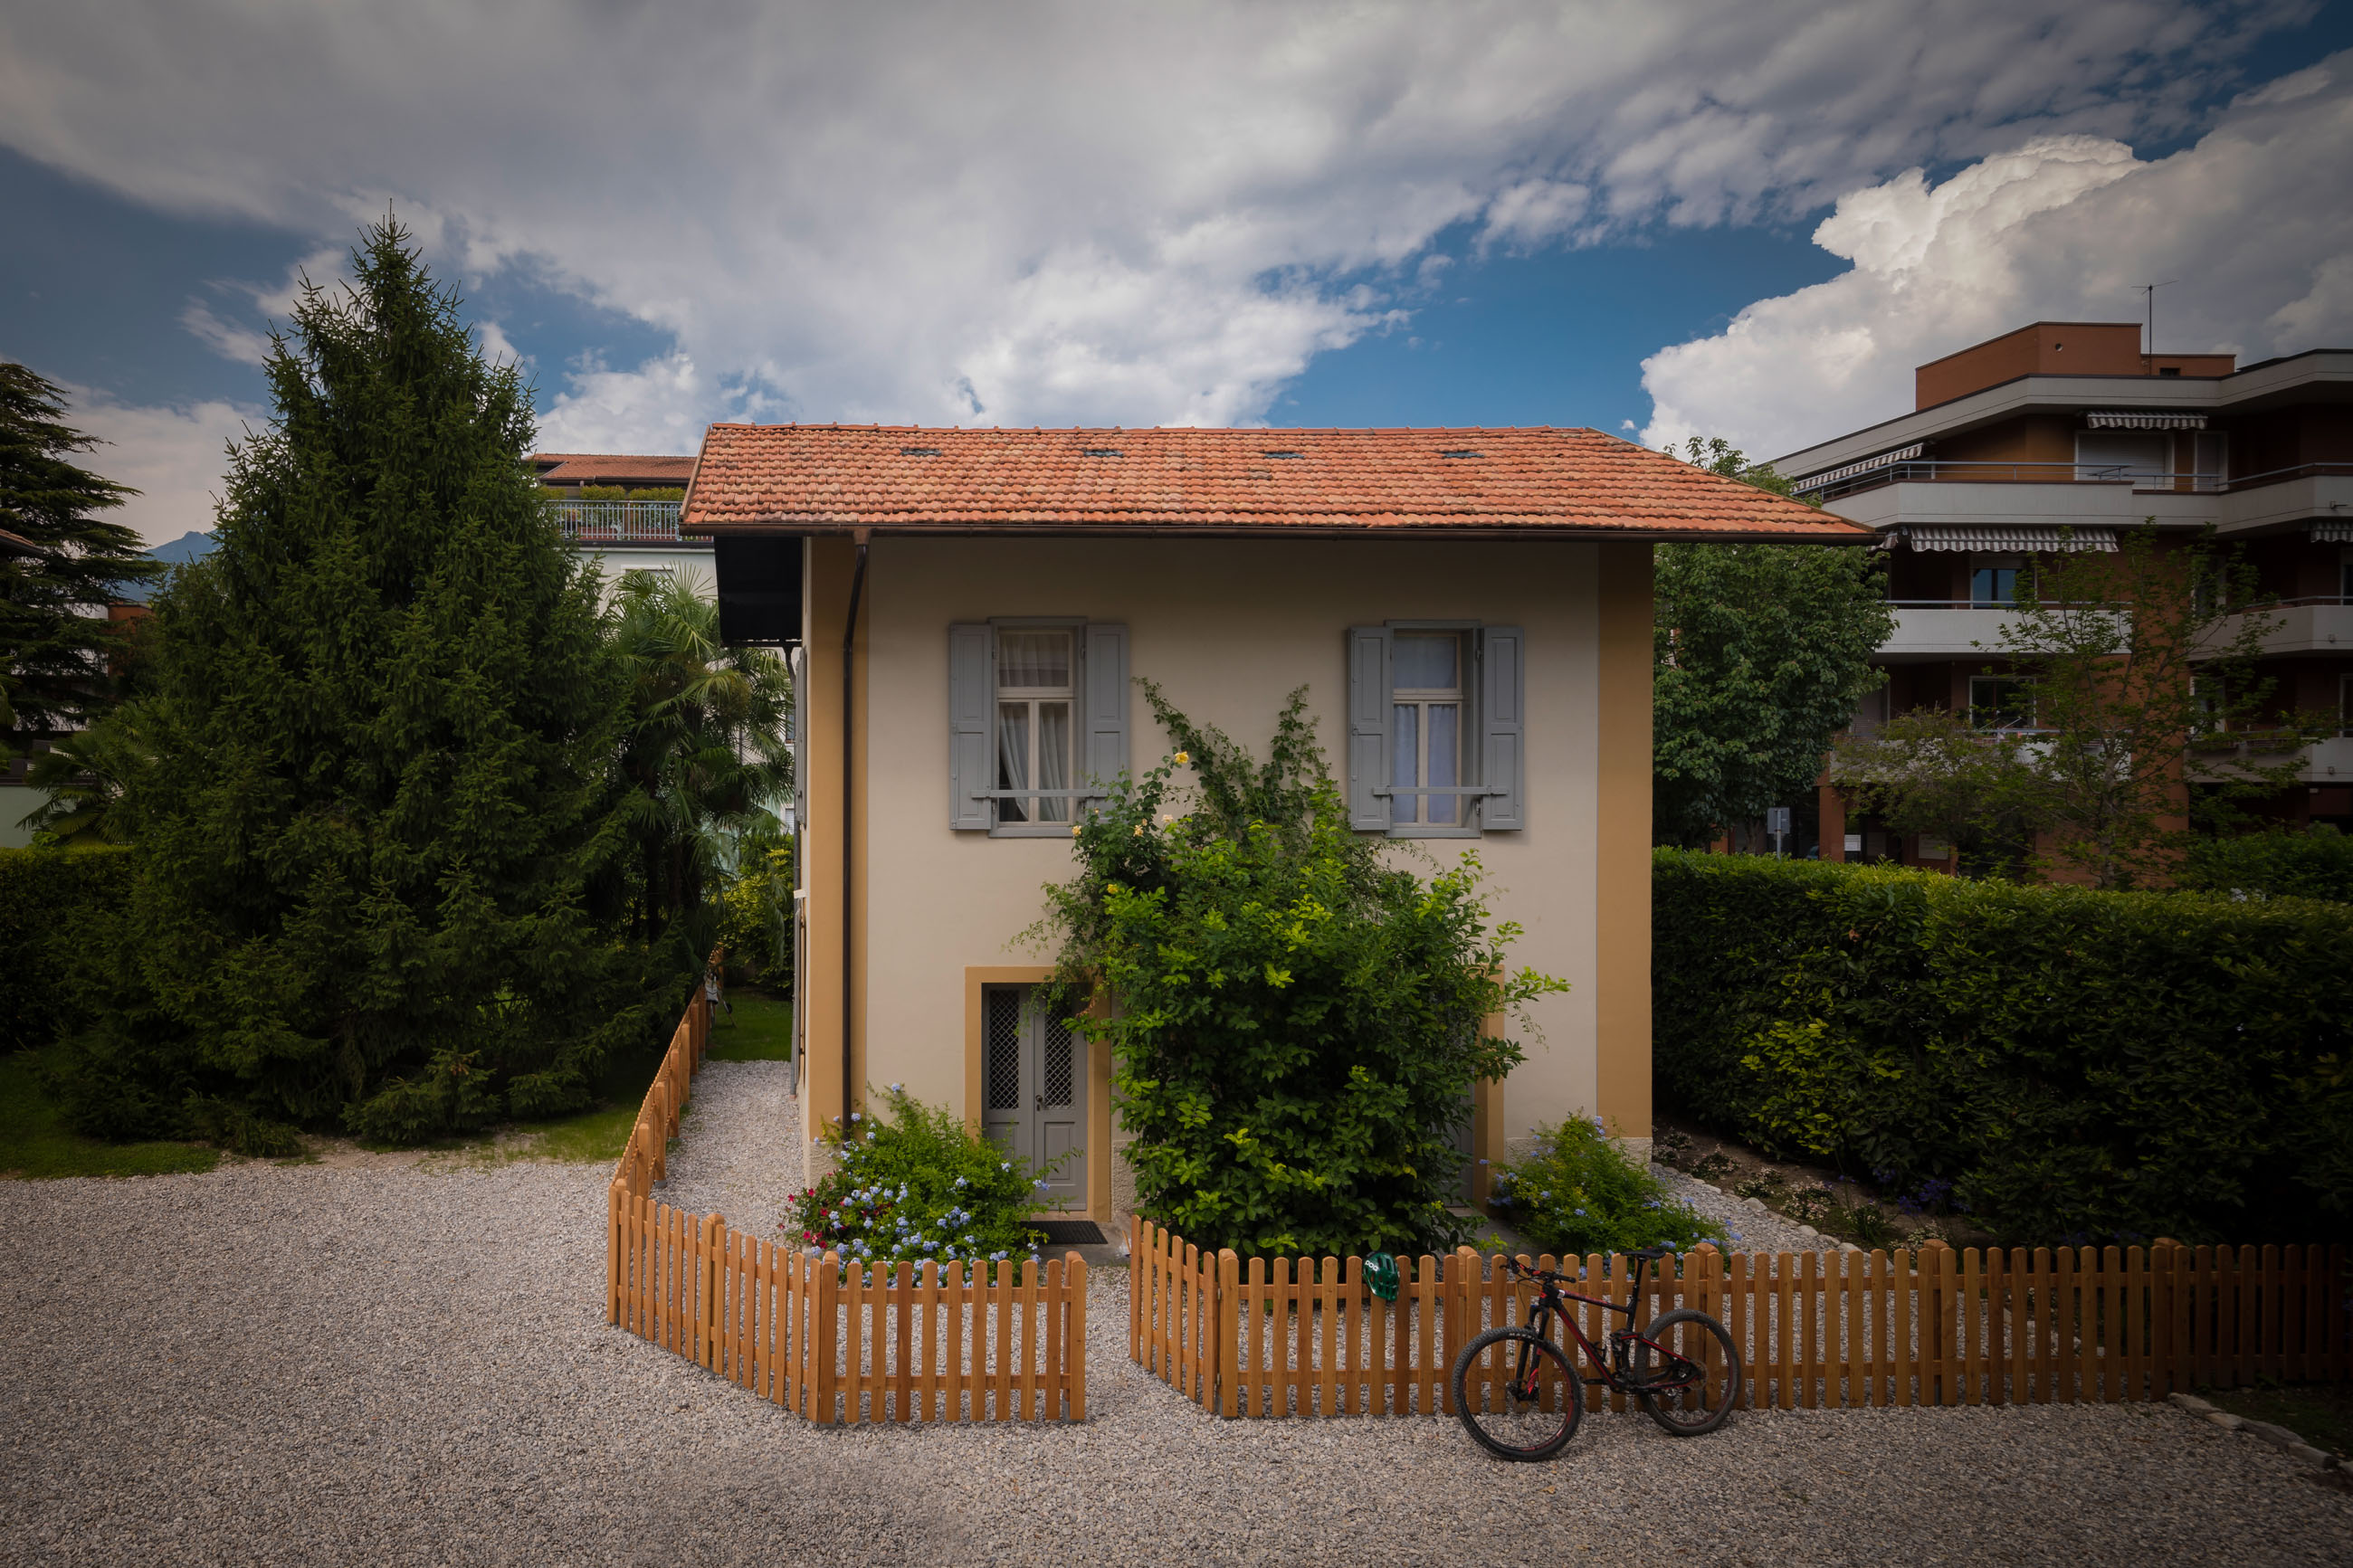 Villa Brunelli - Ines la Graziosa depandance - iva del Garda - Lake Garda - Garda Trentino - Italy